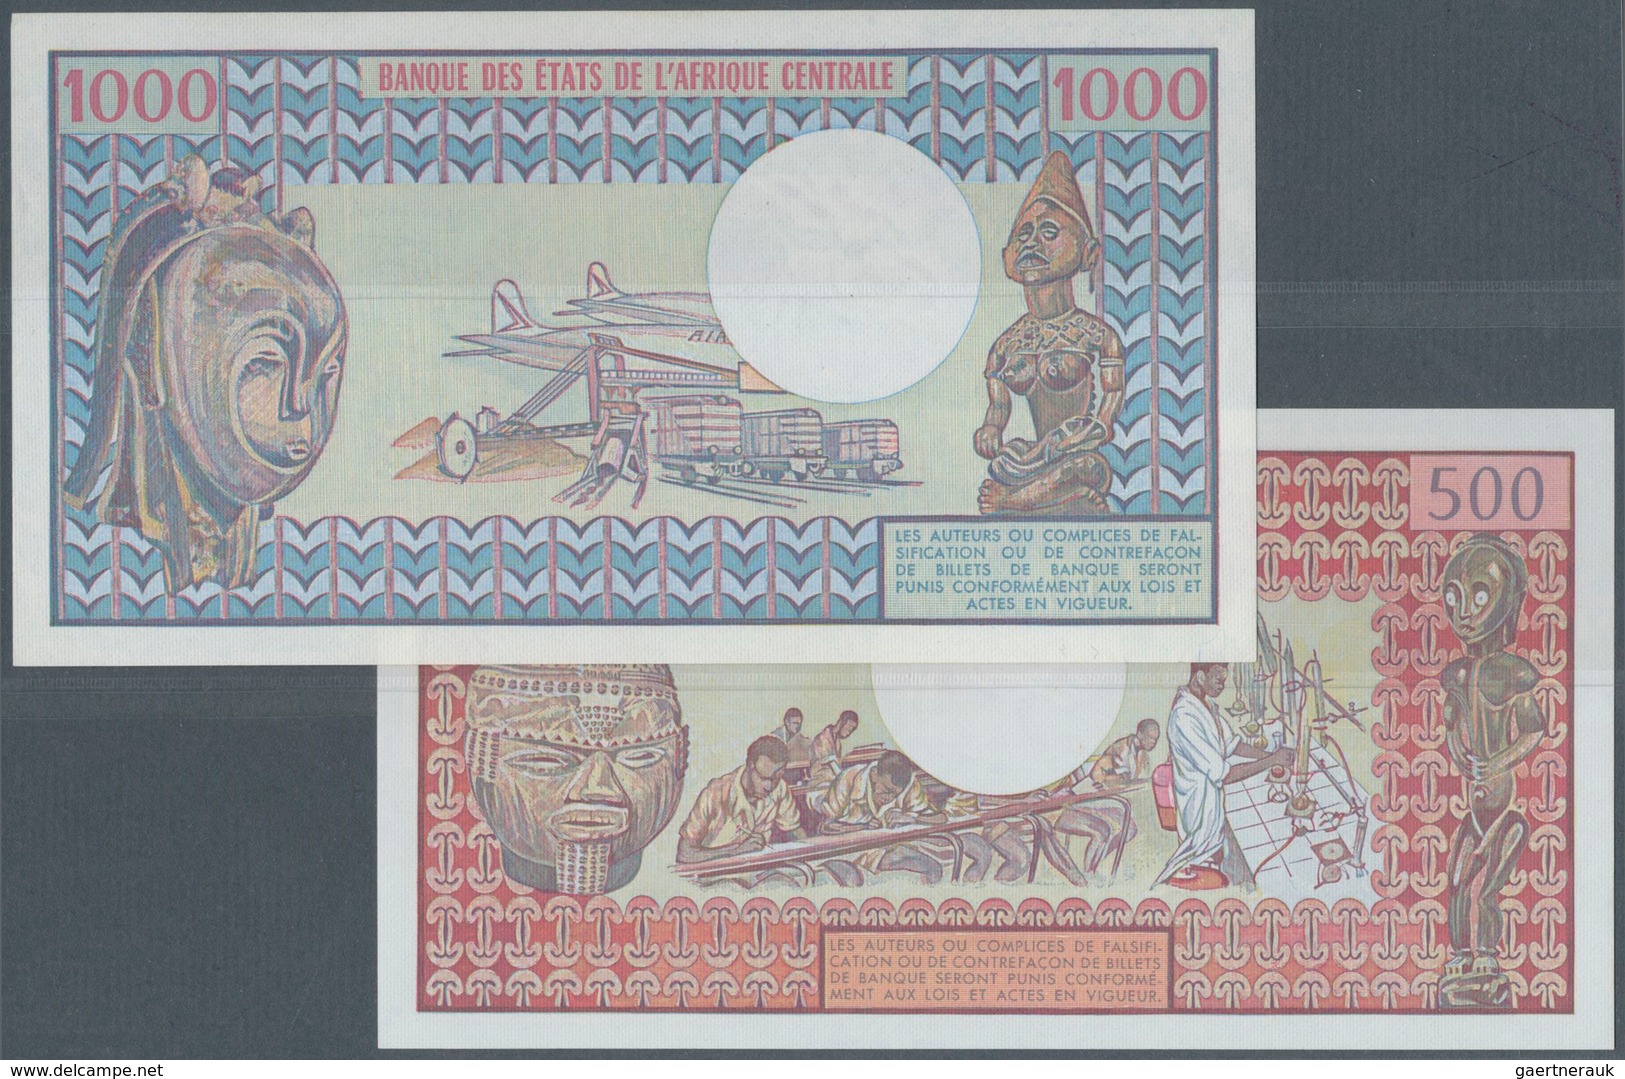 01598 Gabon / Gabun: Republique Gabonaise 500 Francs 1978 And 1000 Francs 1983, P.2b, 3d, Both In UNC Cond - Gabon